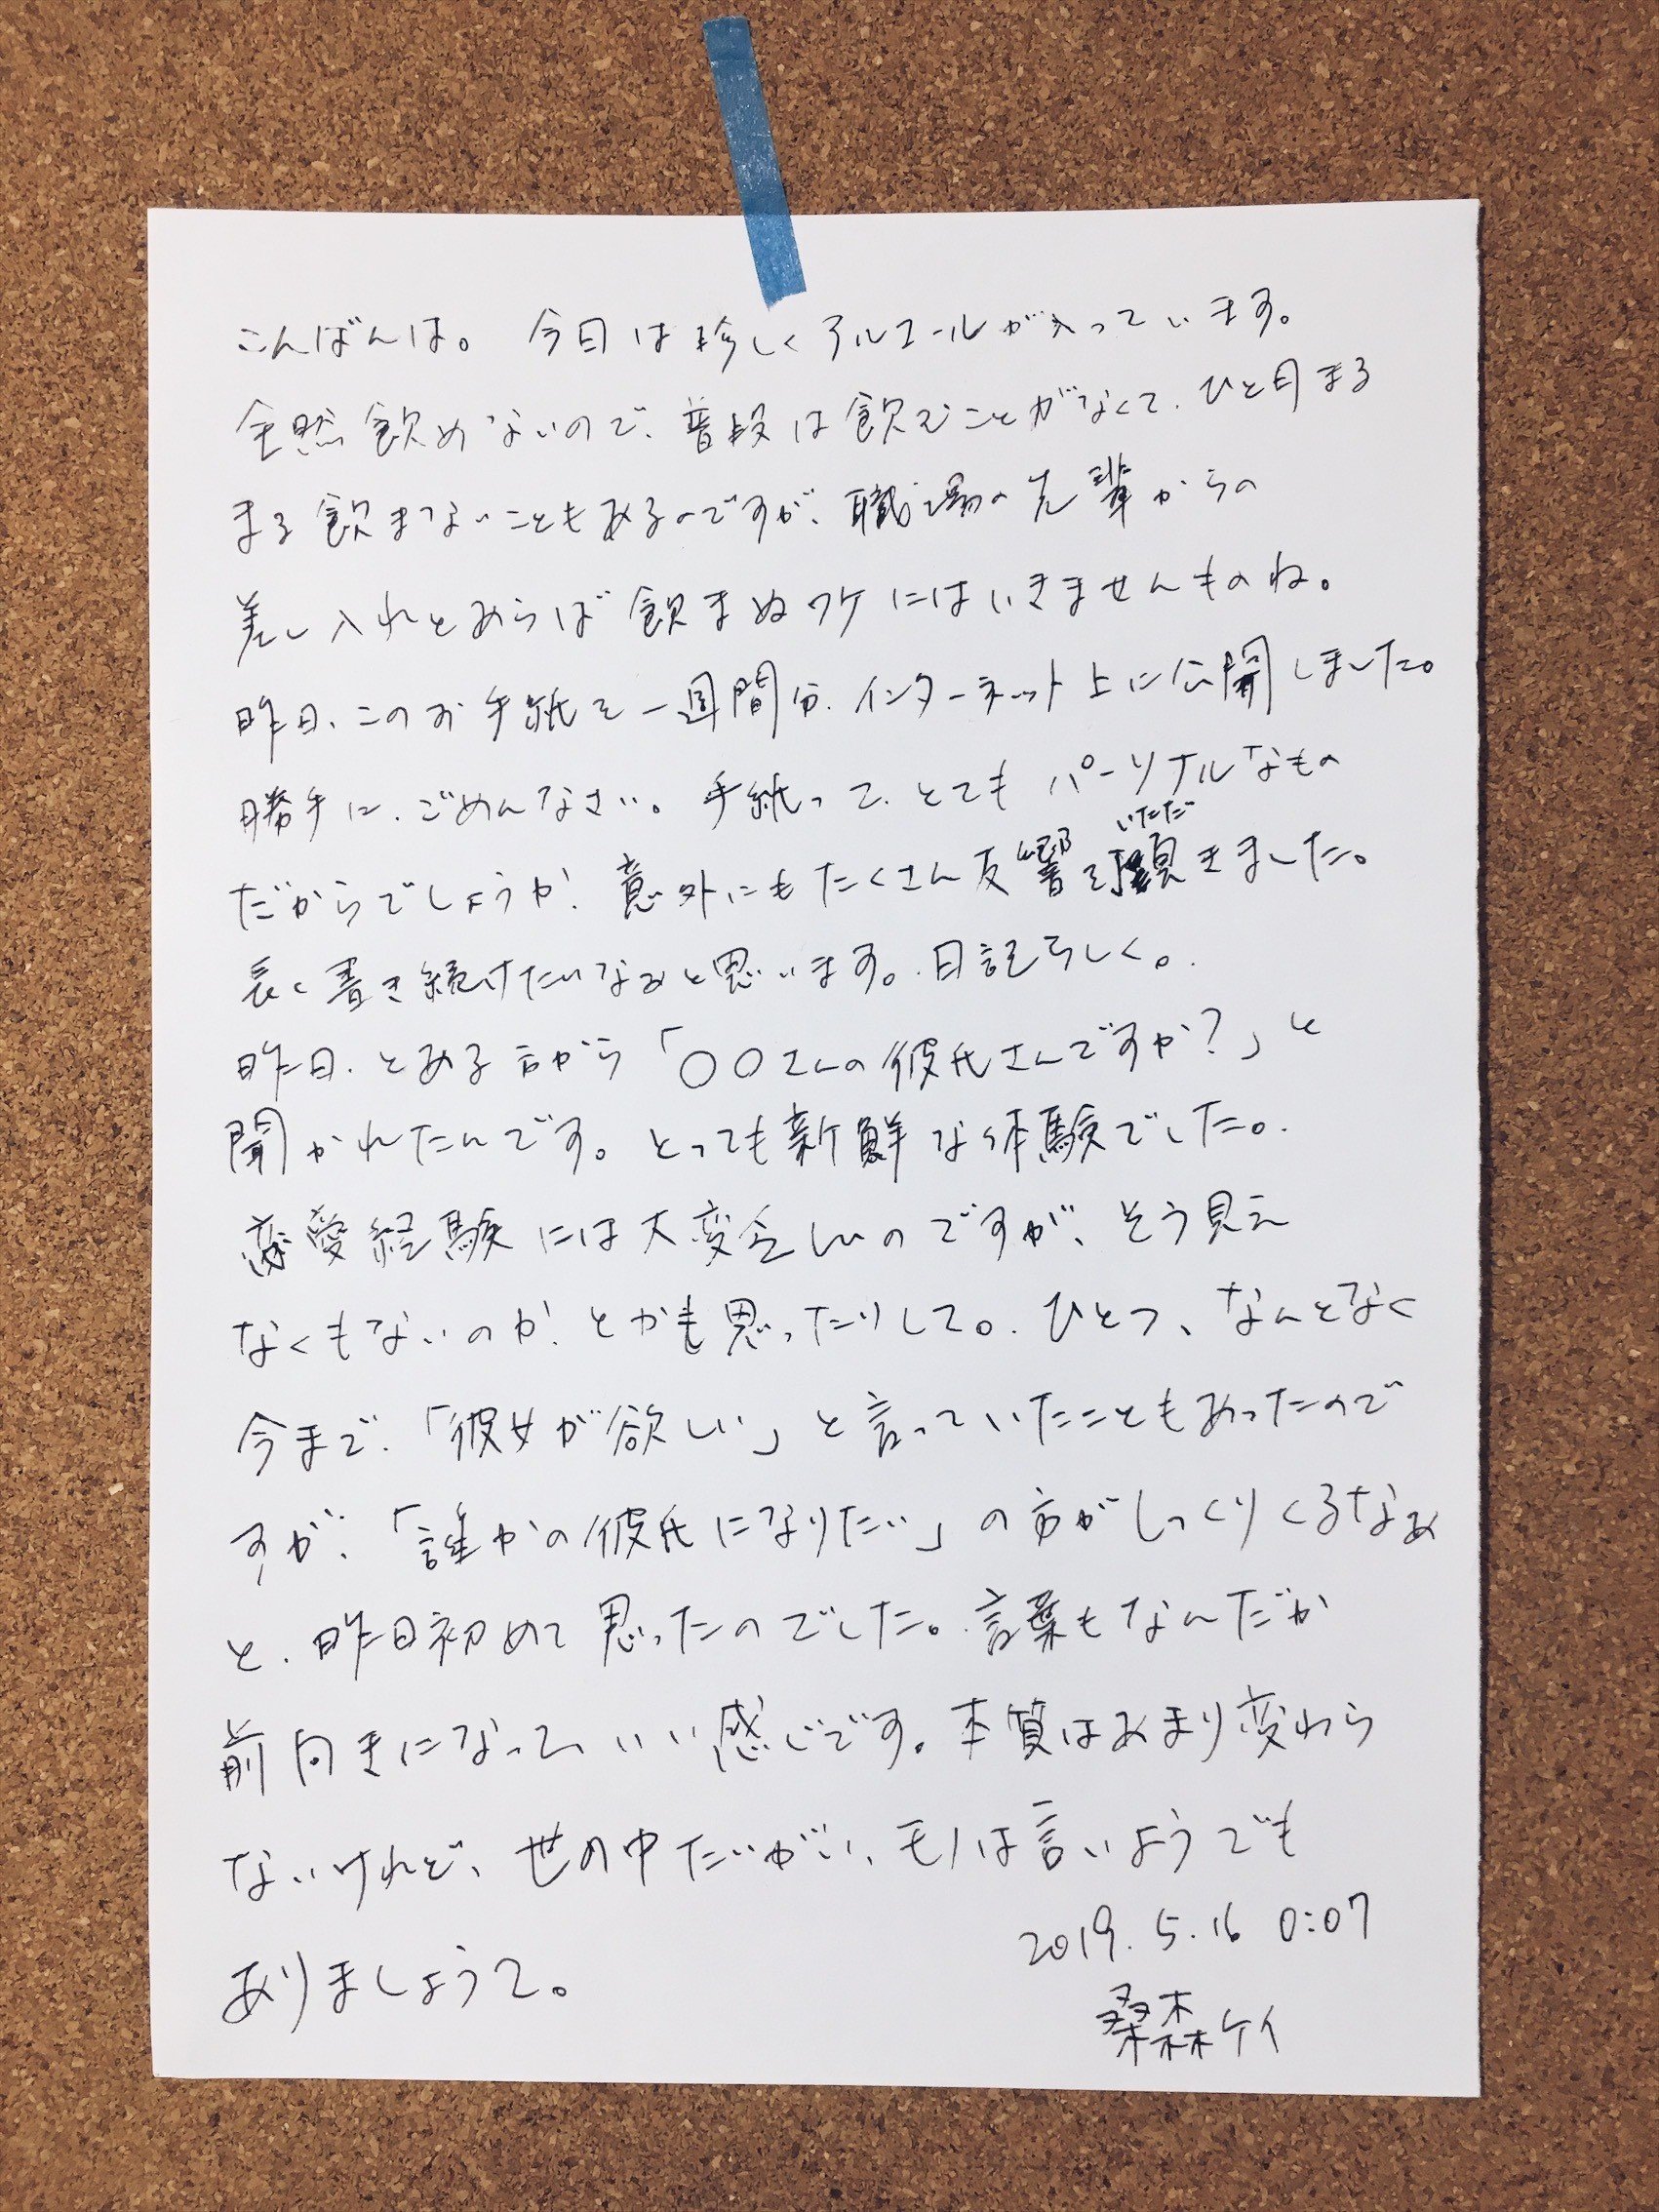 あなたへの手紙 Day8 14 加茂慶太郎 Note